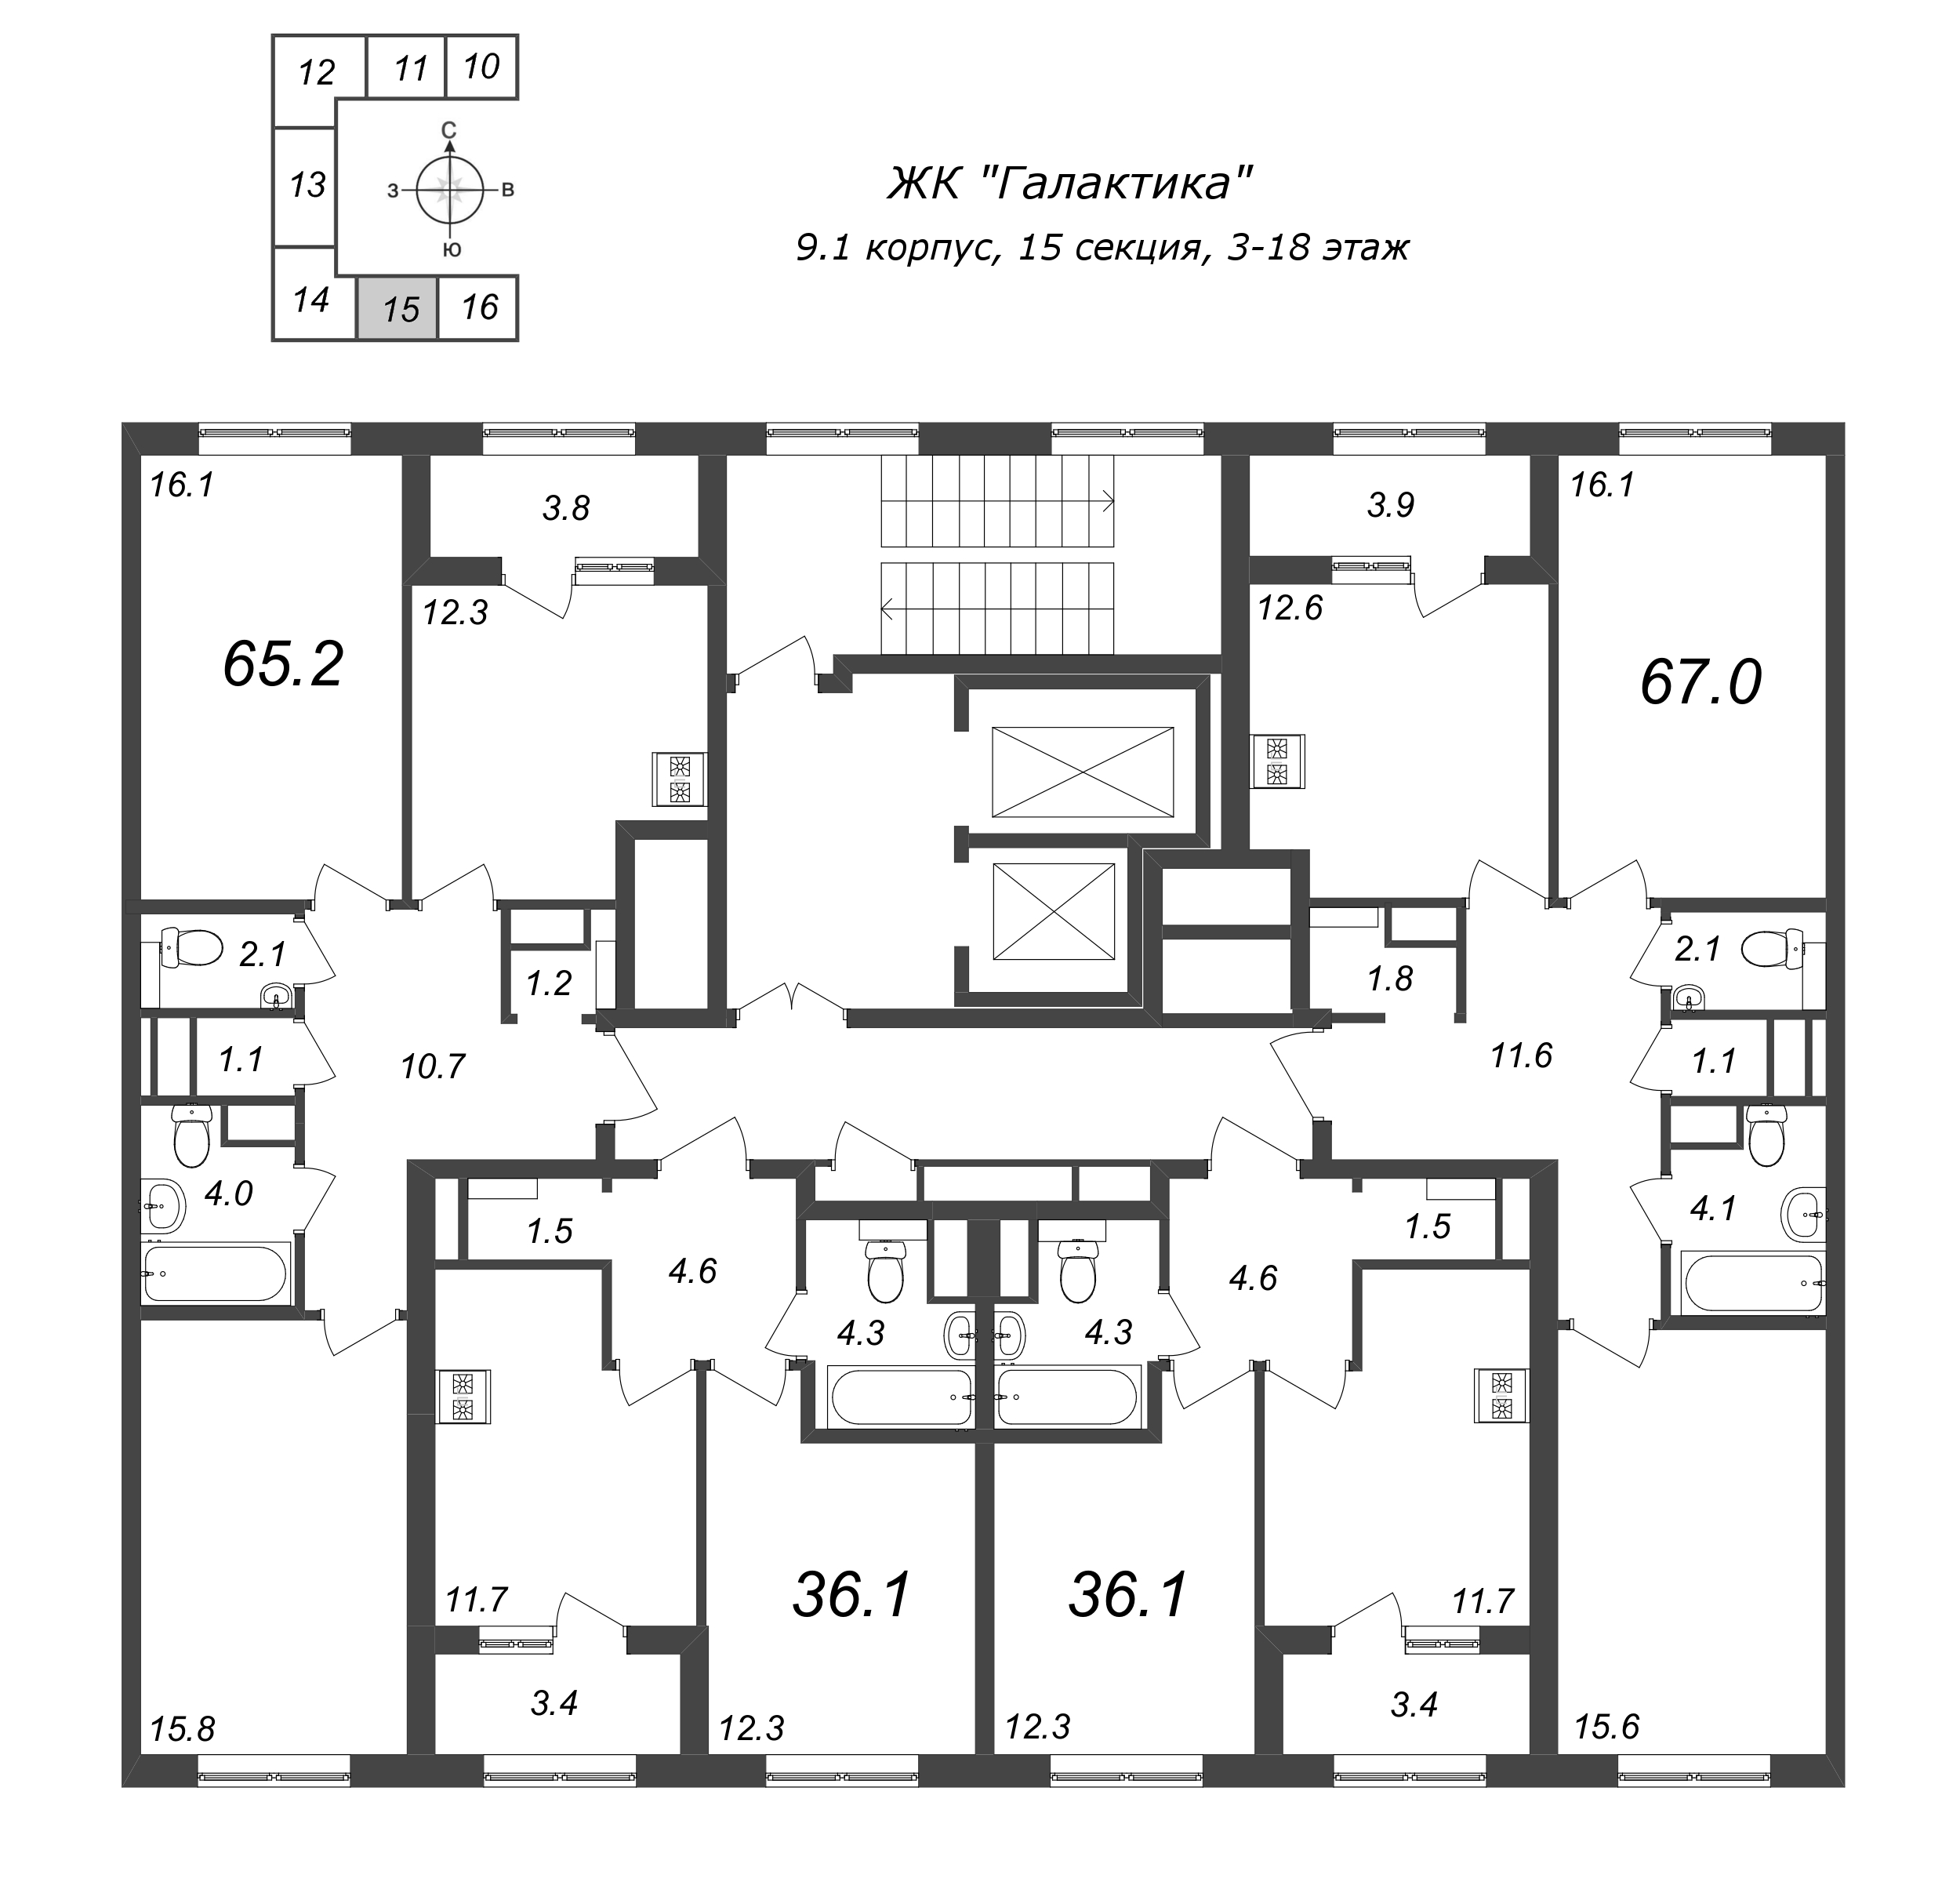 2-комнатная квартира, 66.7 м² в ЖК "Галактика" - планировка этажа